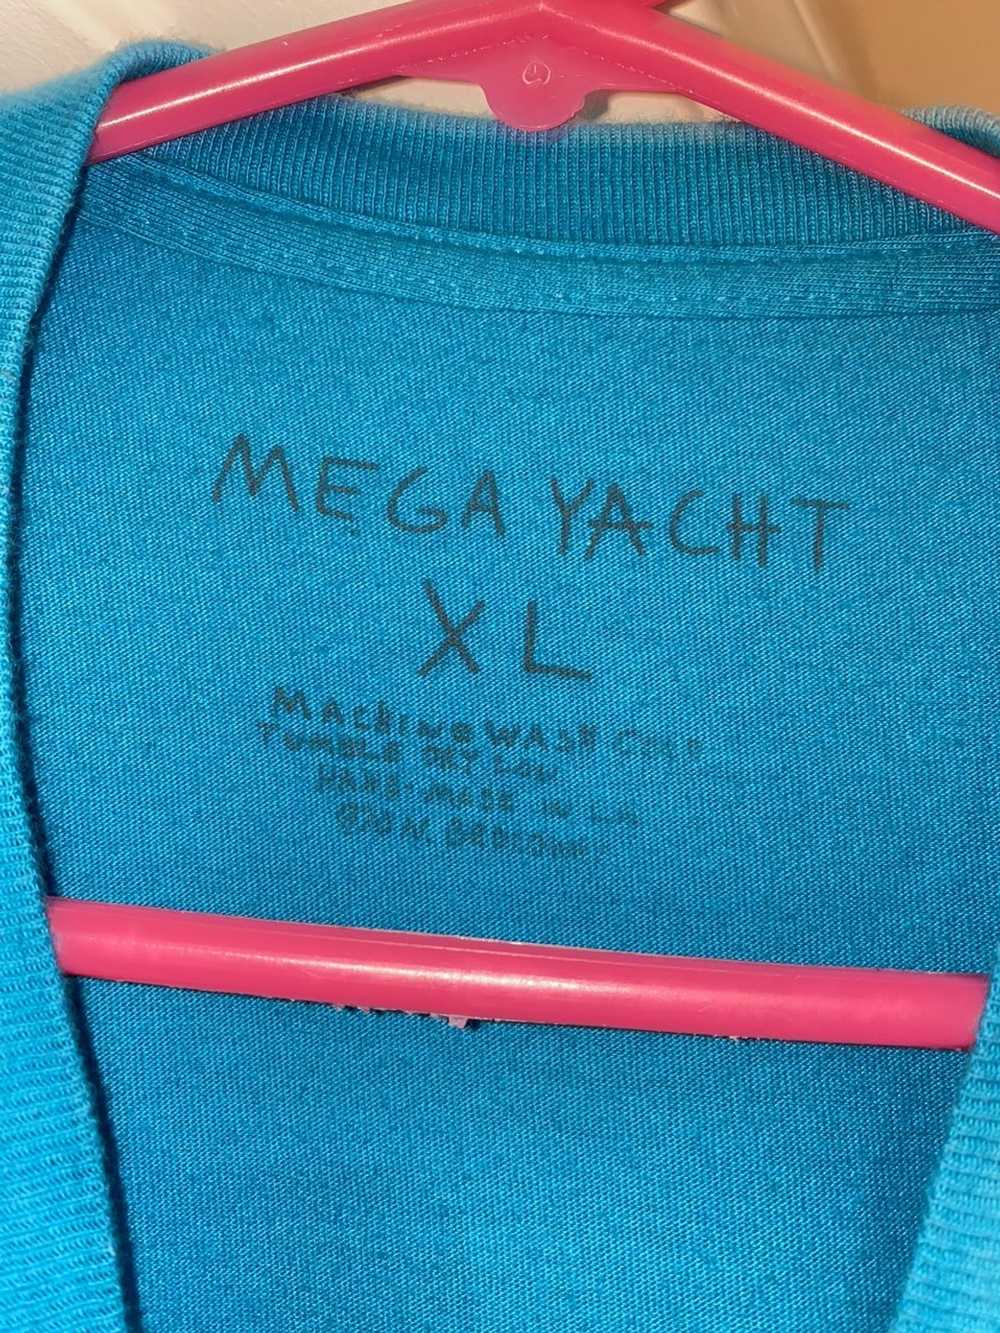 Mega Yacht Mega Yacht Louis Vuitton Casper - image 3